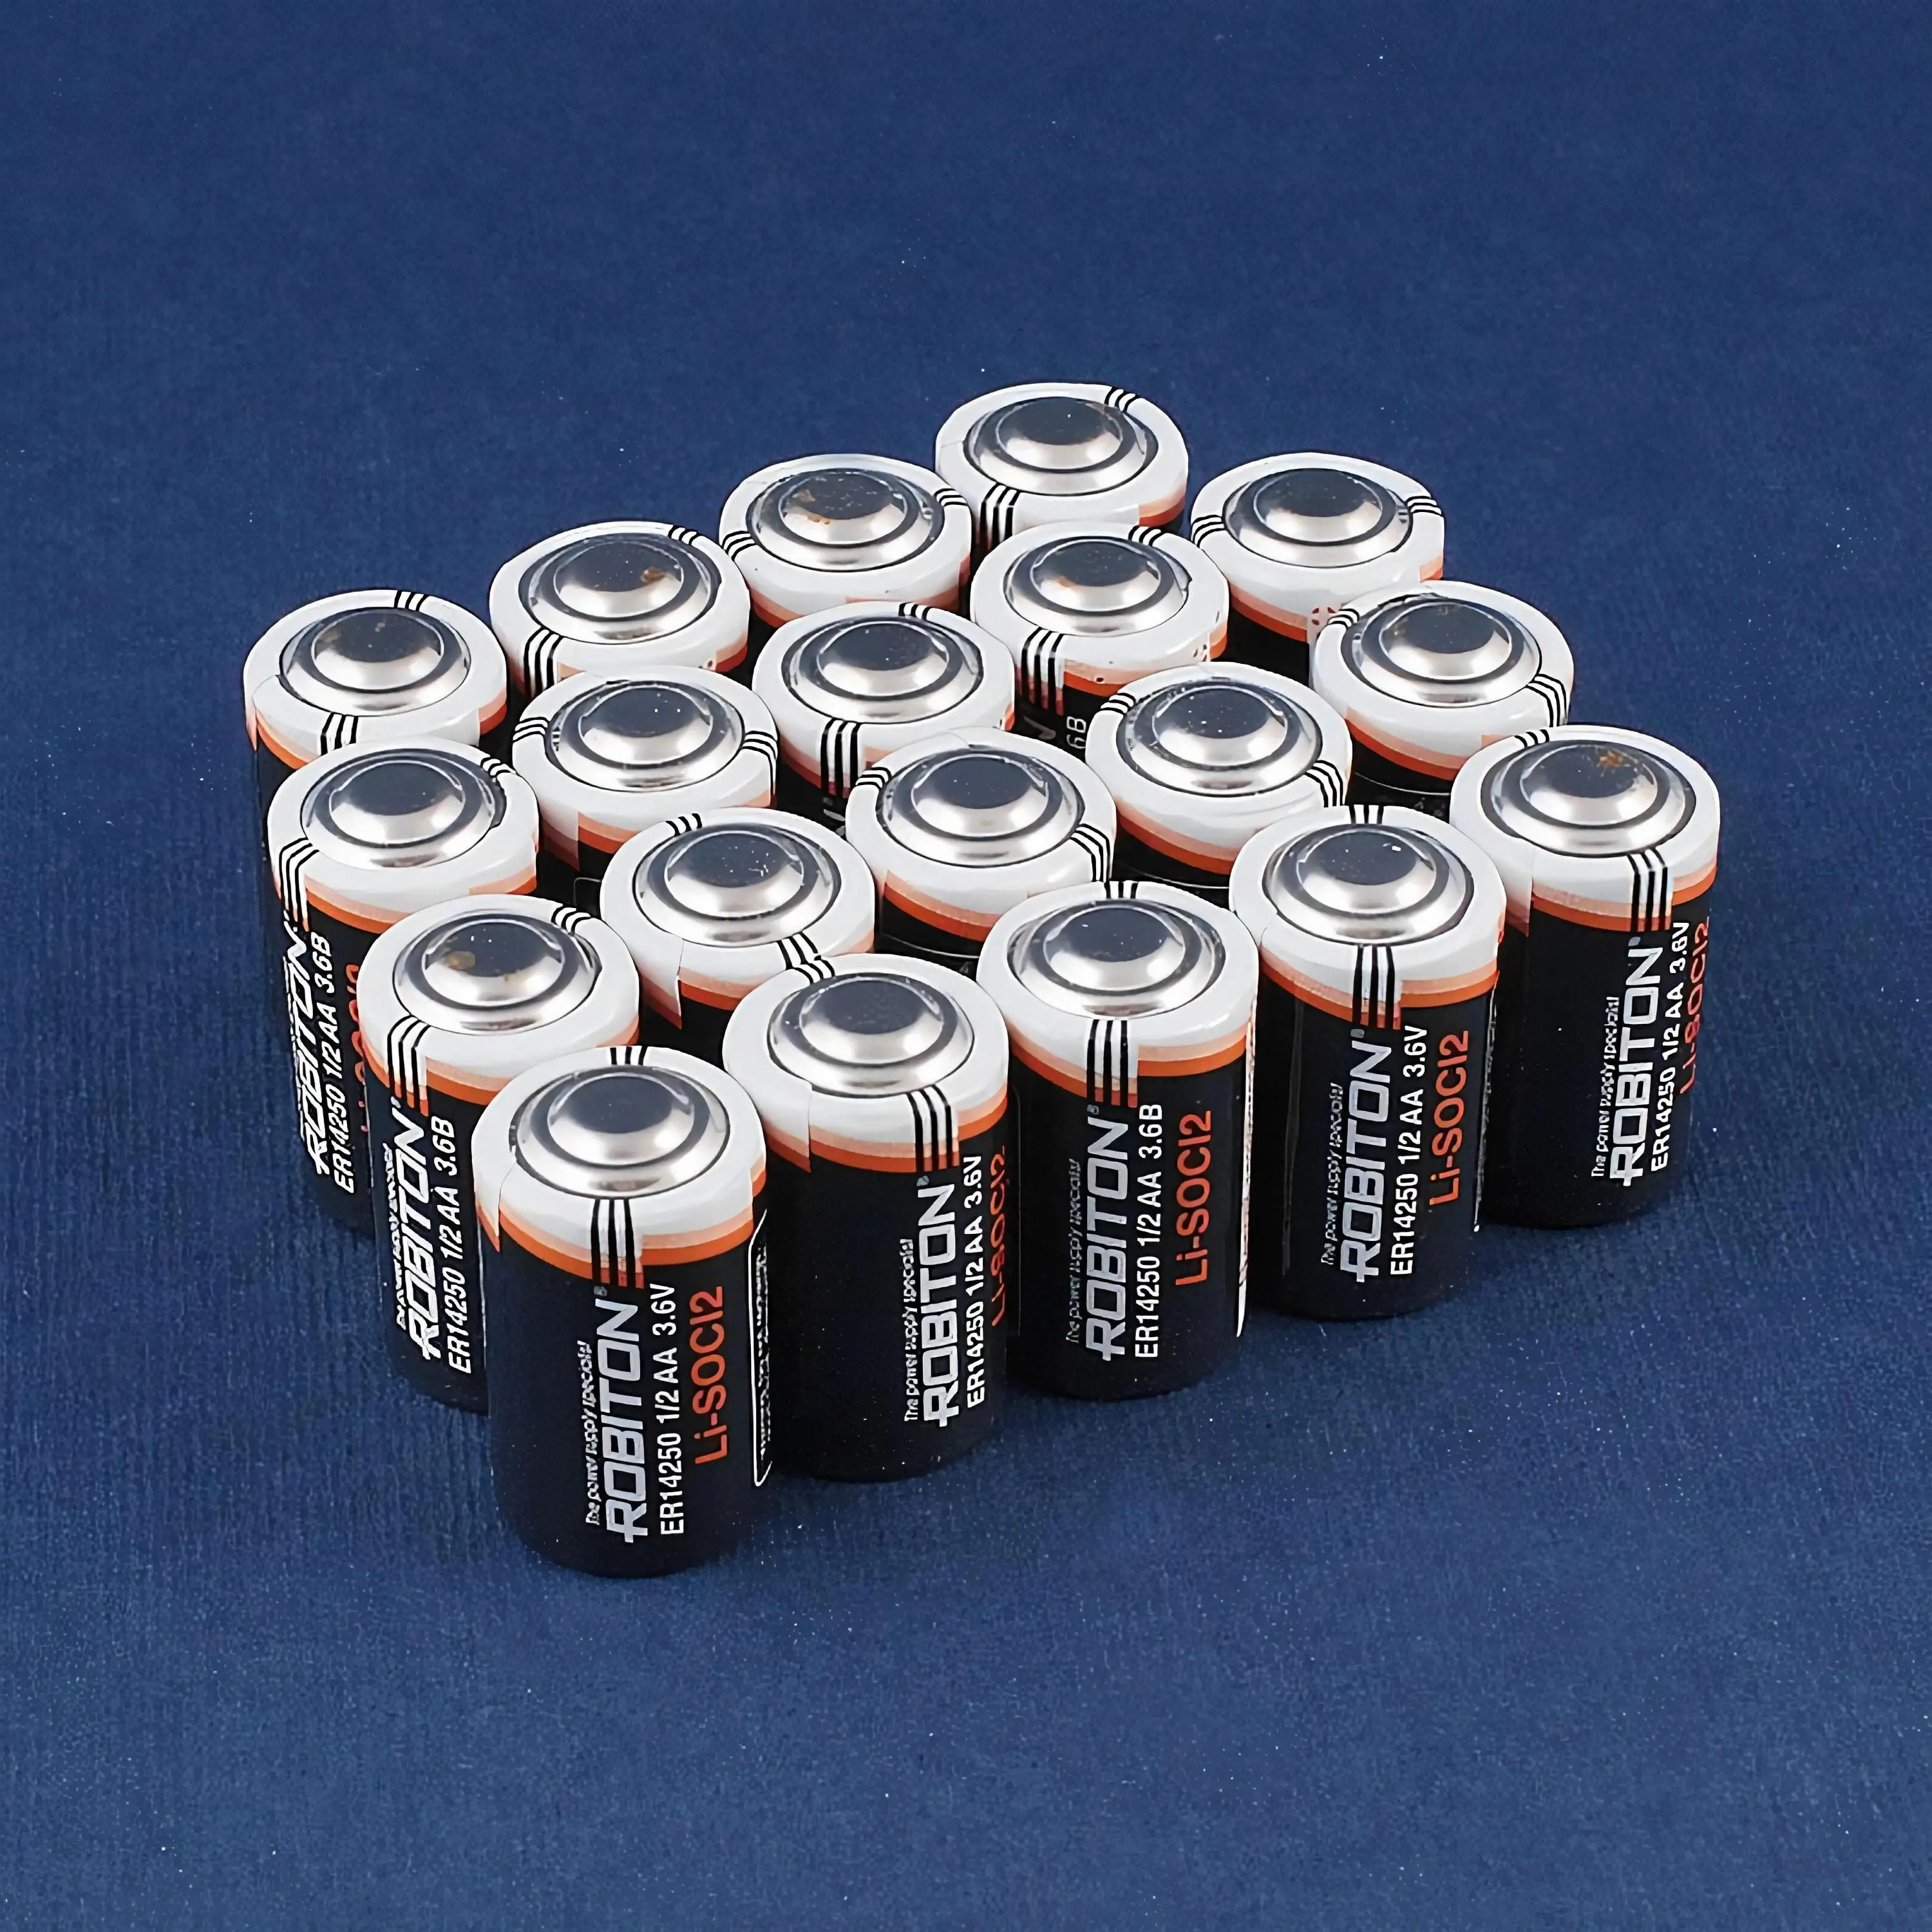 Батареи элементы питания. Батарейка er14250 3.6v Size 1/2 AA. Батарейки 2аа и 3аа. Батарейка 1/2 AA ДНС. 2aa батарейка.